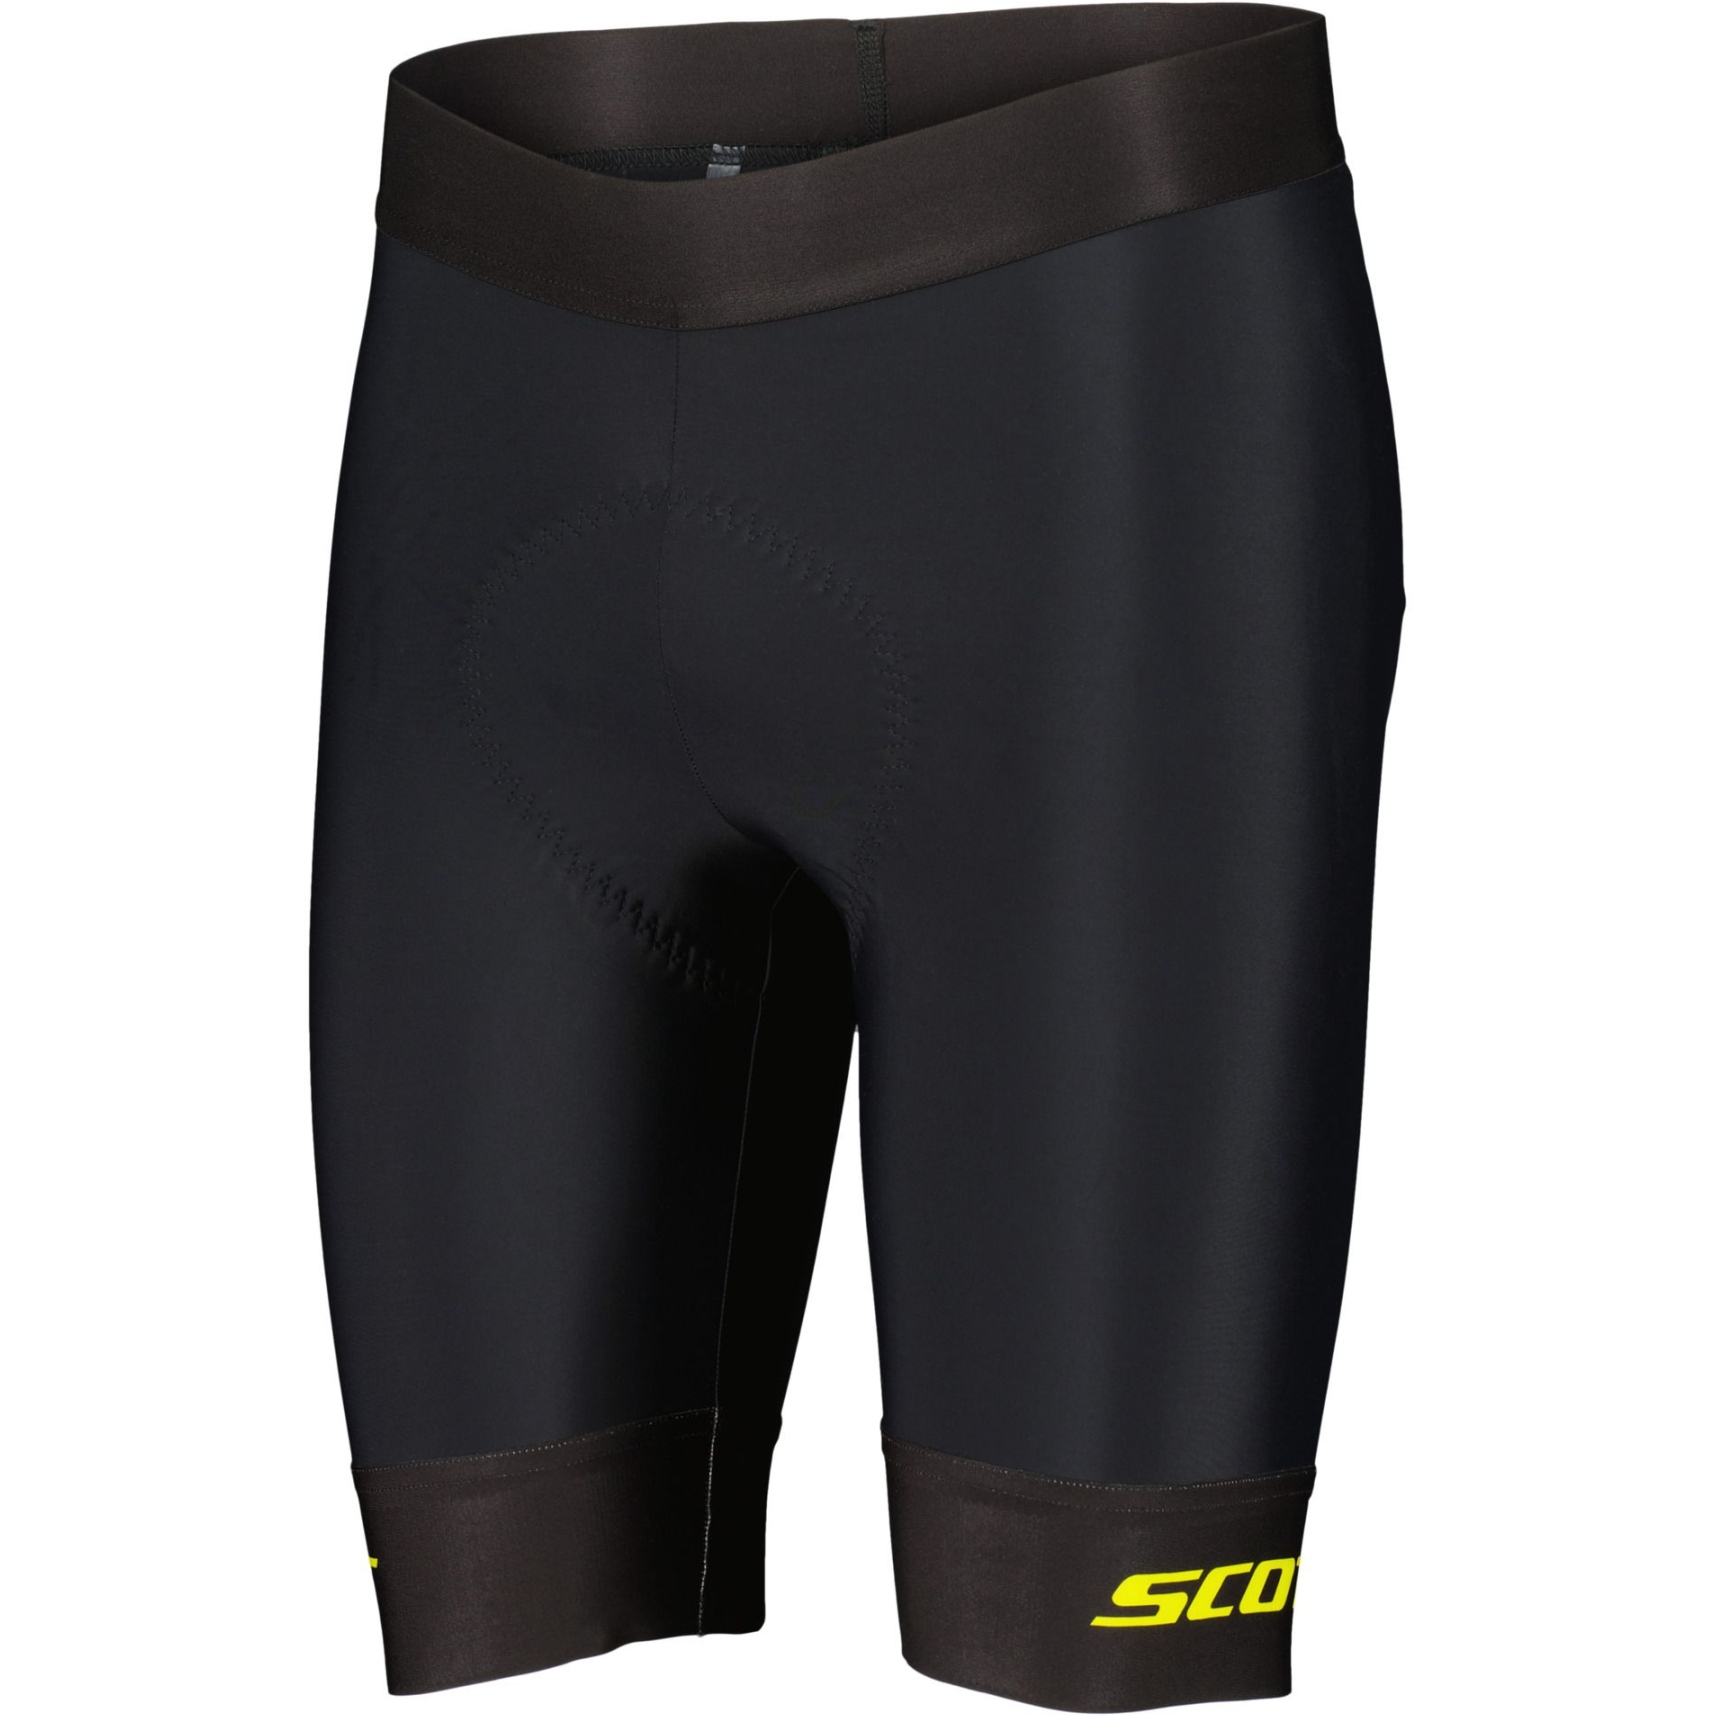 Produktbild von SCOTT RC Pro +++ Shorts Herren - black/sulphur yellow